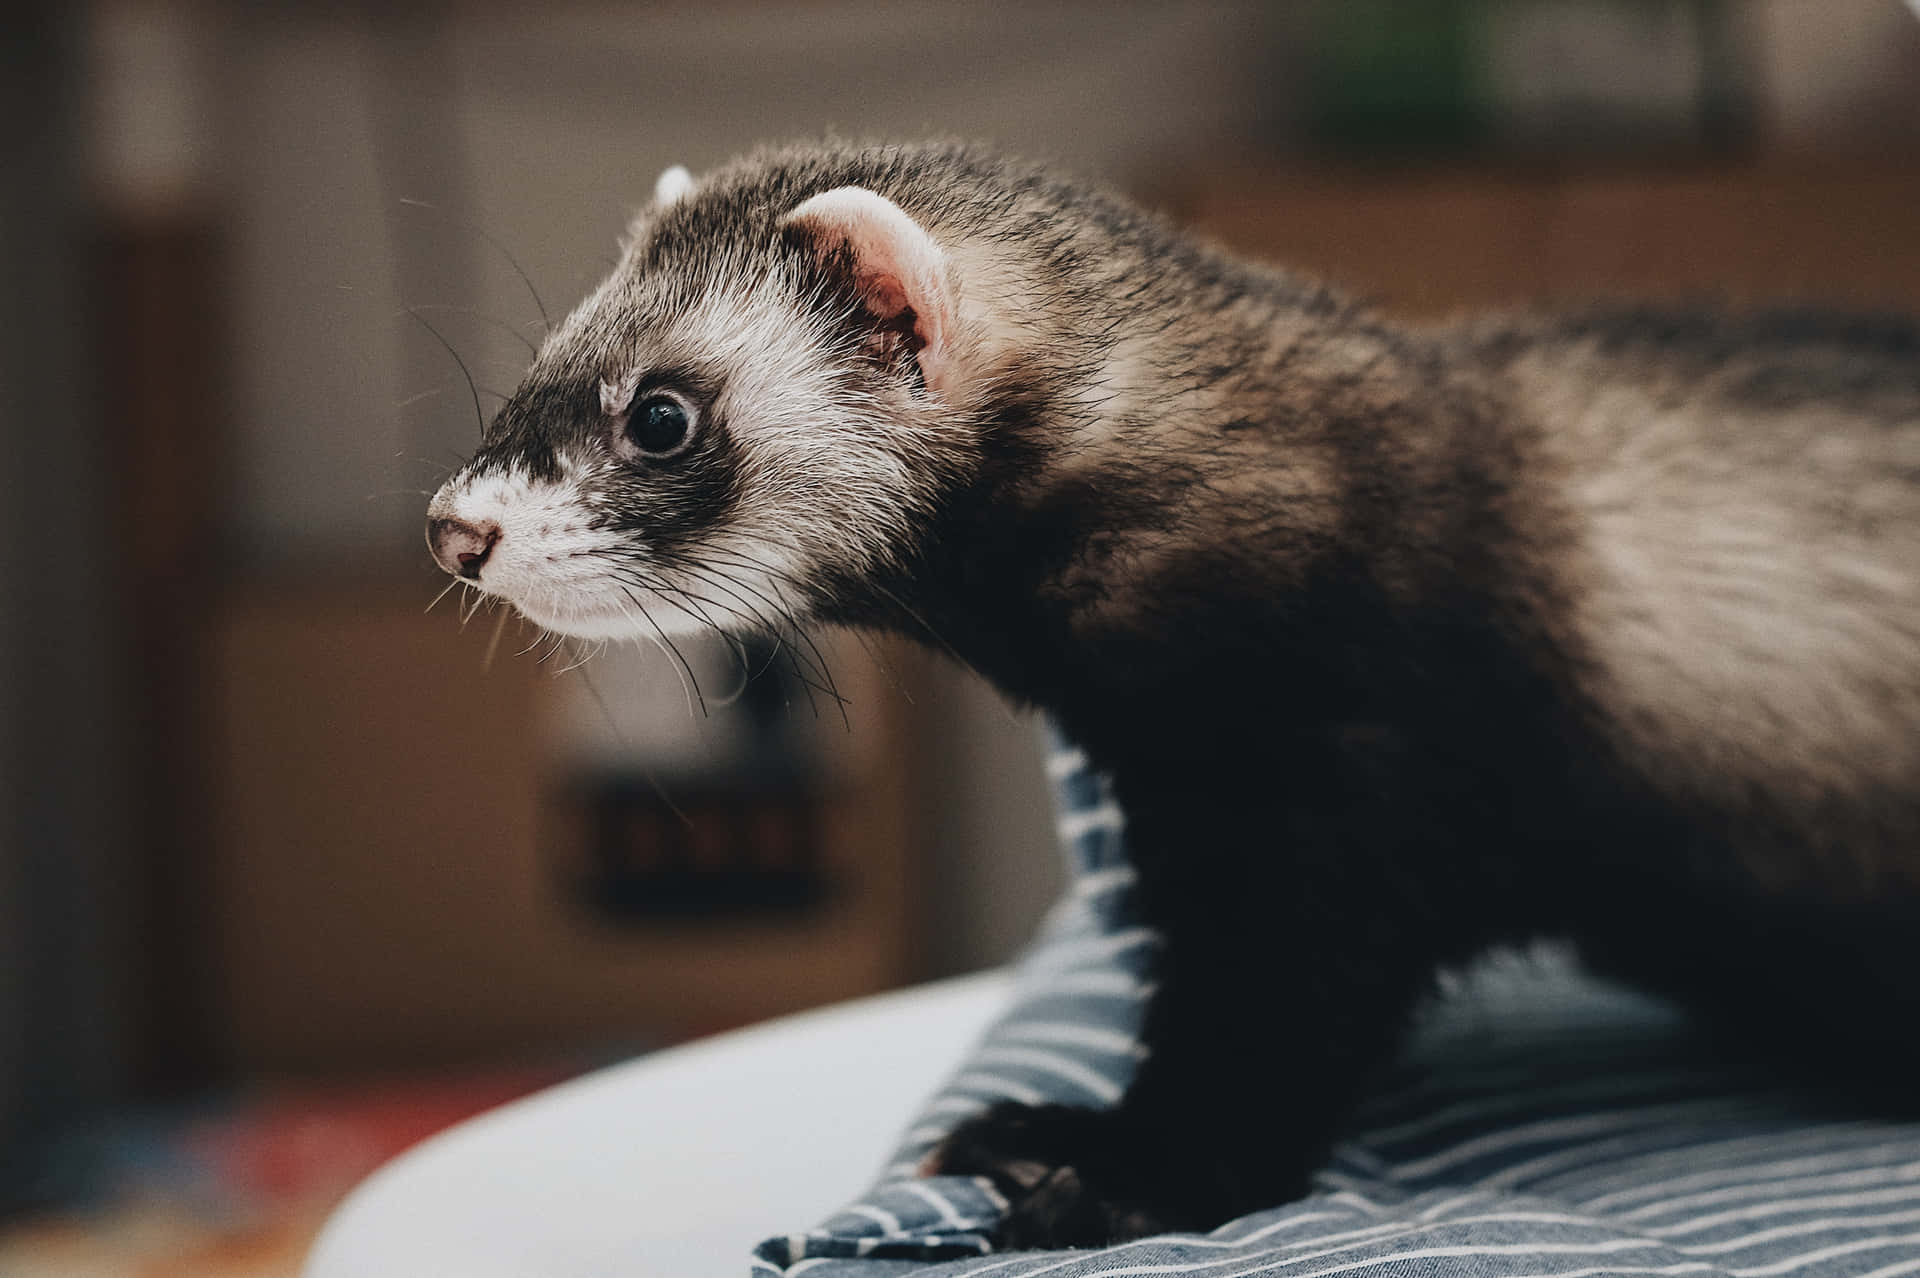 A cute ferret exploring its environment.